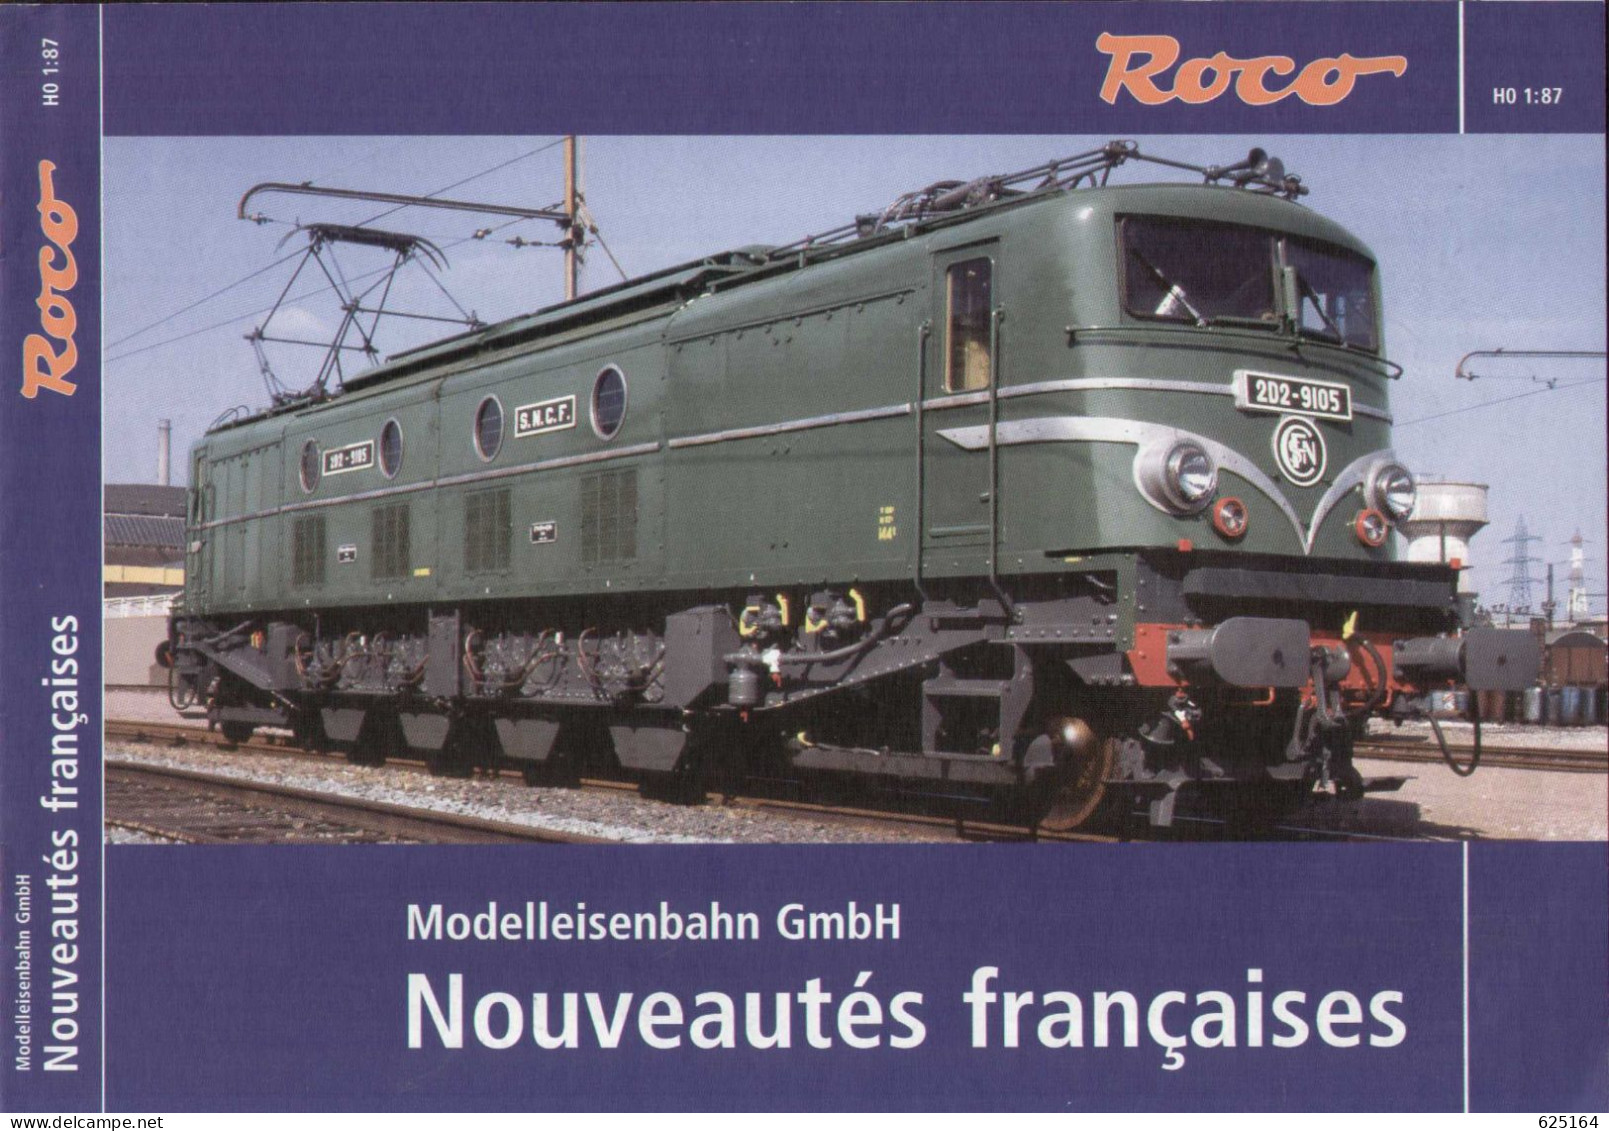 Catalogue ROCO 2006 Modelleisenbahn Nouveautés Françaises T2M - French